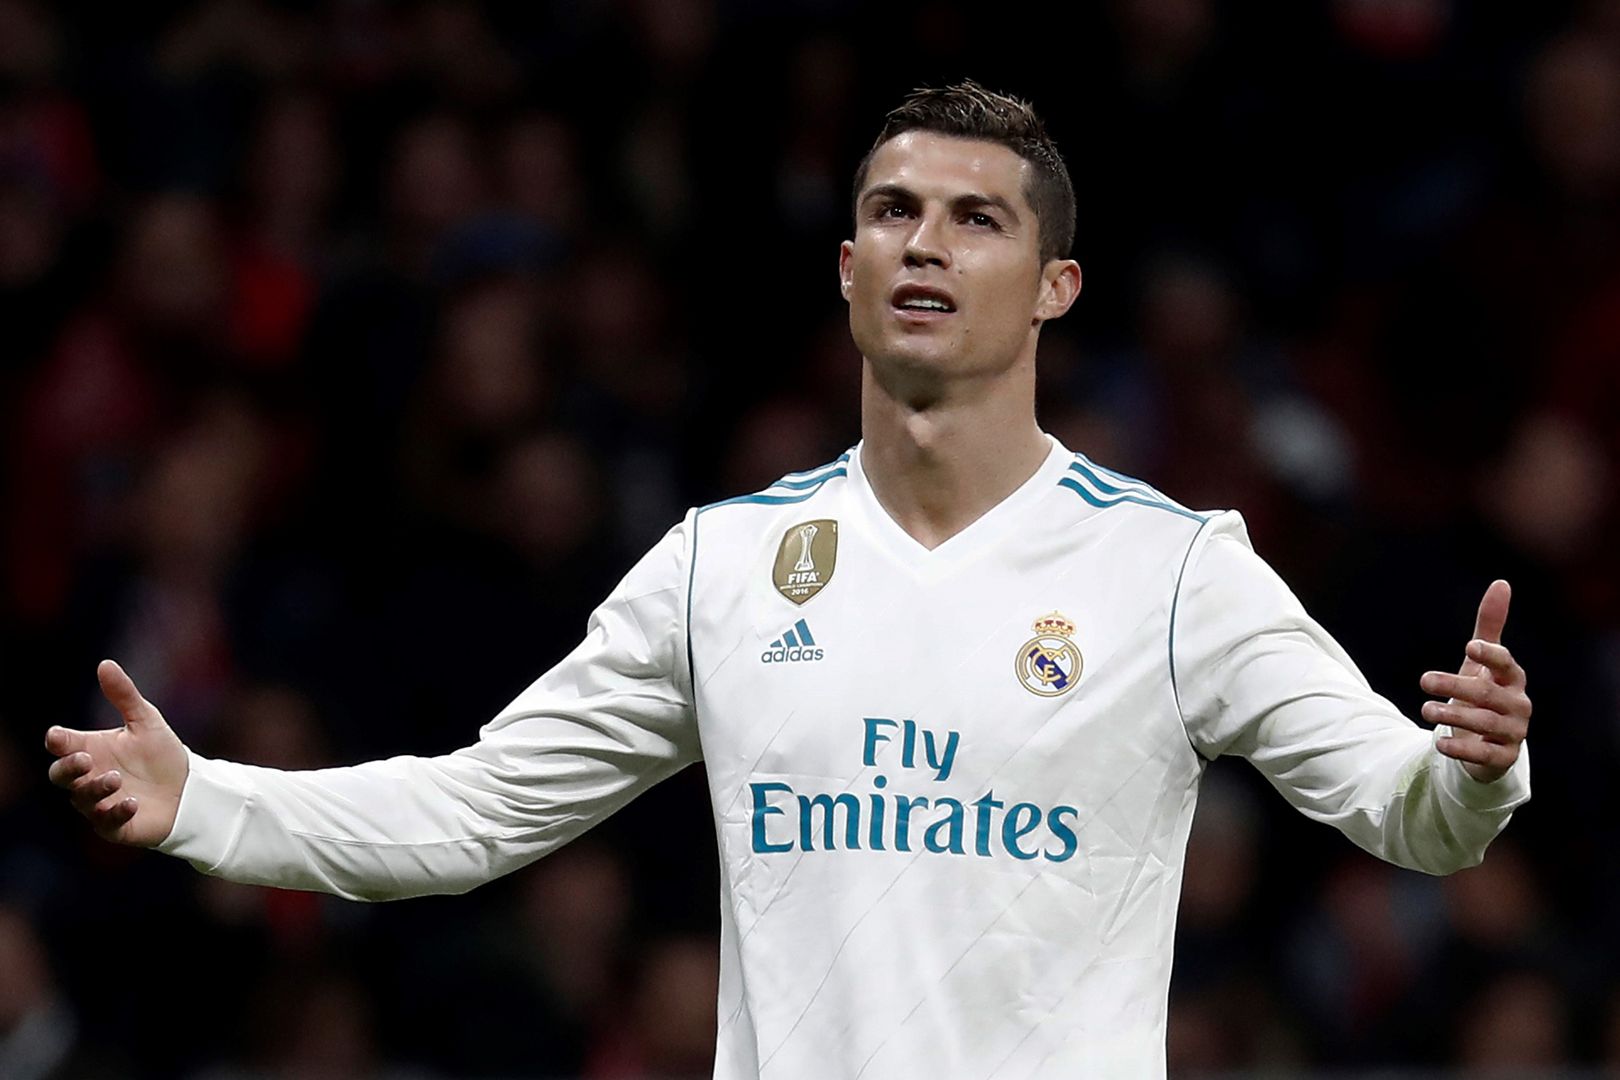 Maglia Cristiano RONALDO #7 Real Madrid 17-18 - Sports In vendita a Teramo